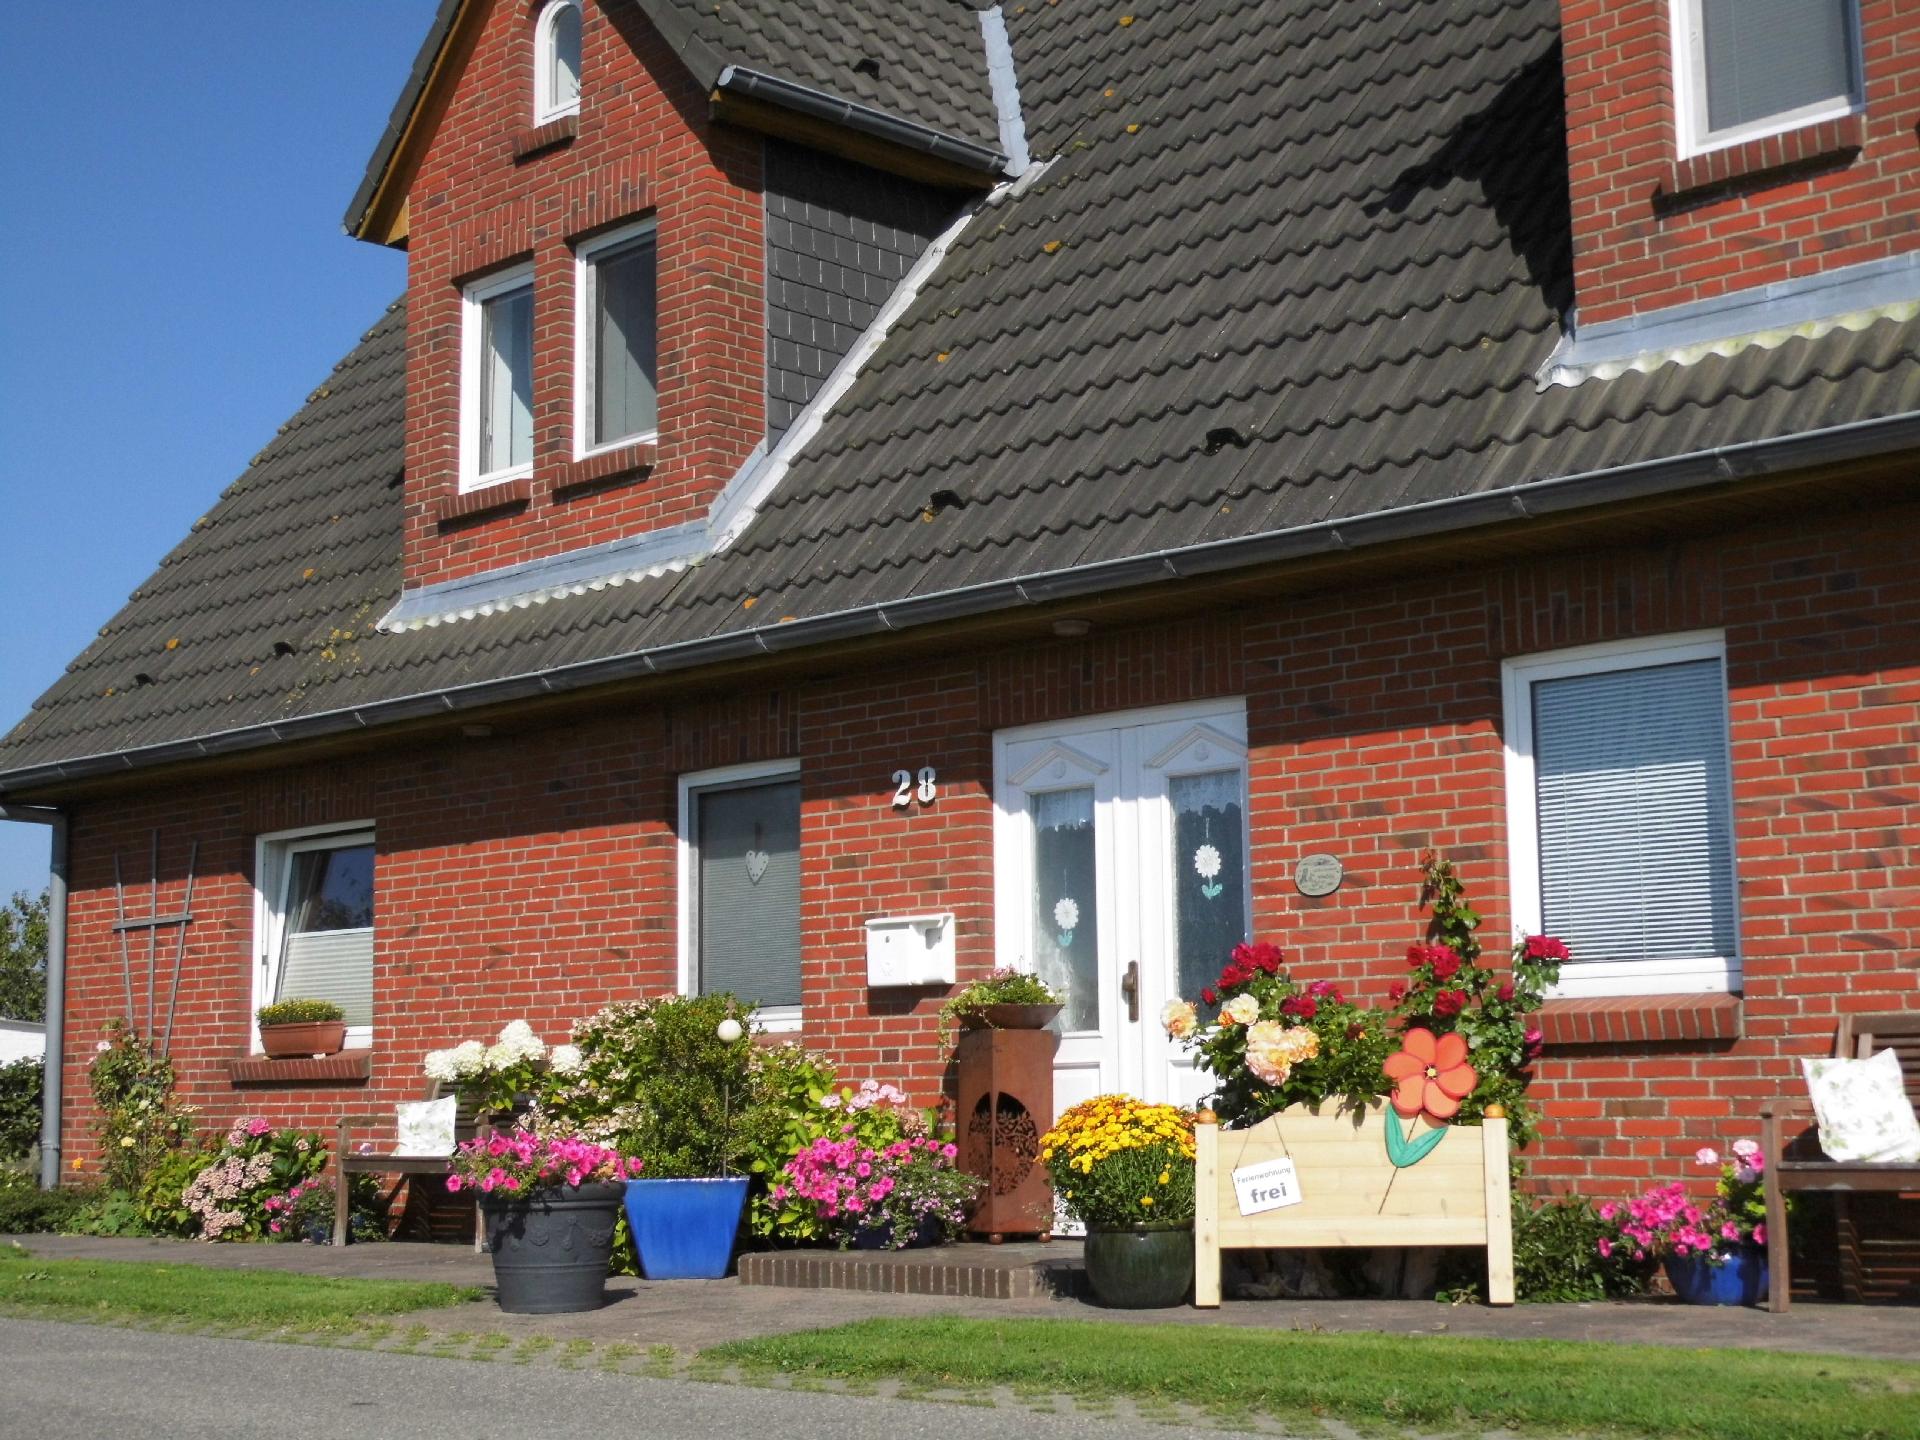 Wohnung in Osterdeich mit Terrasse und Garten Ferienhaus in Schleswig Holstein